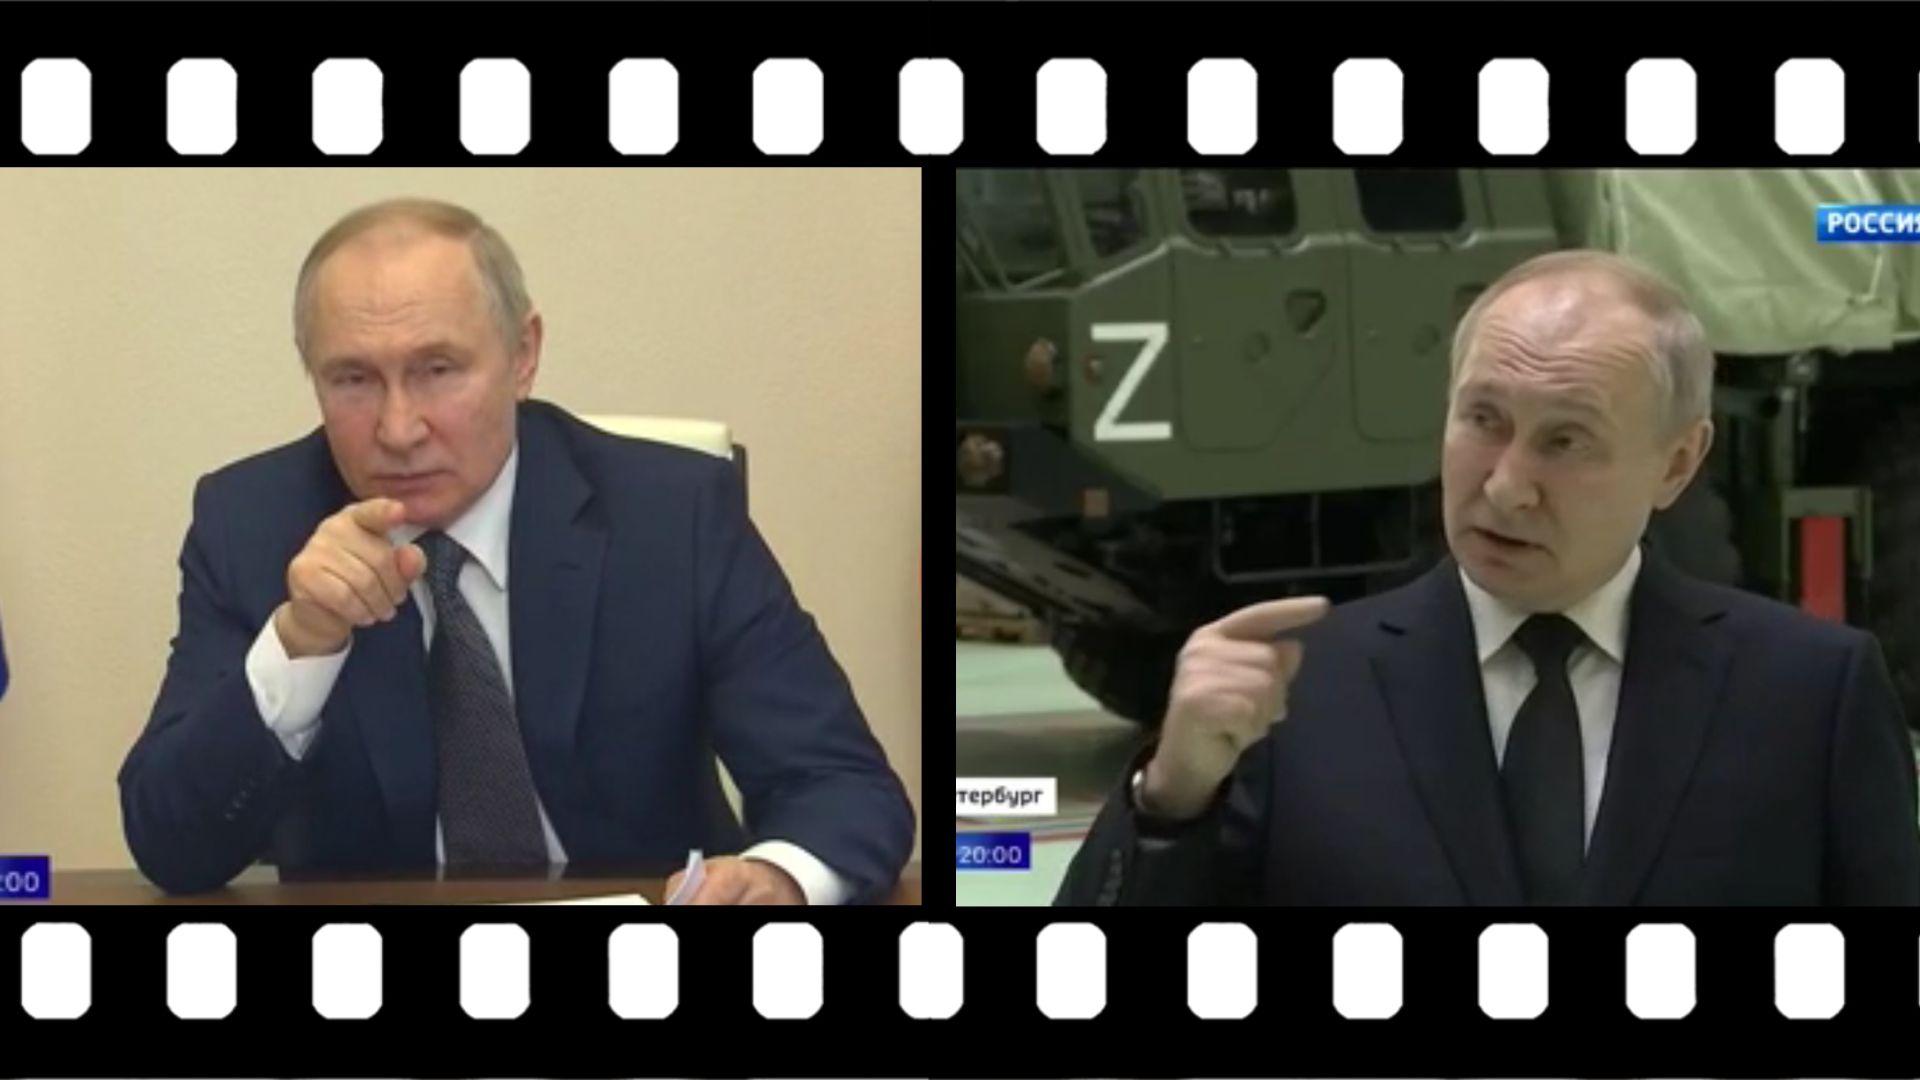 Grafika: w klisze filmowa wmontowane dwa zdjecia Putina, na których wodzi palcem